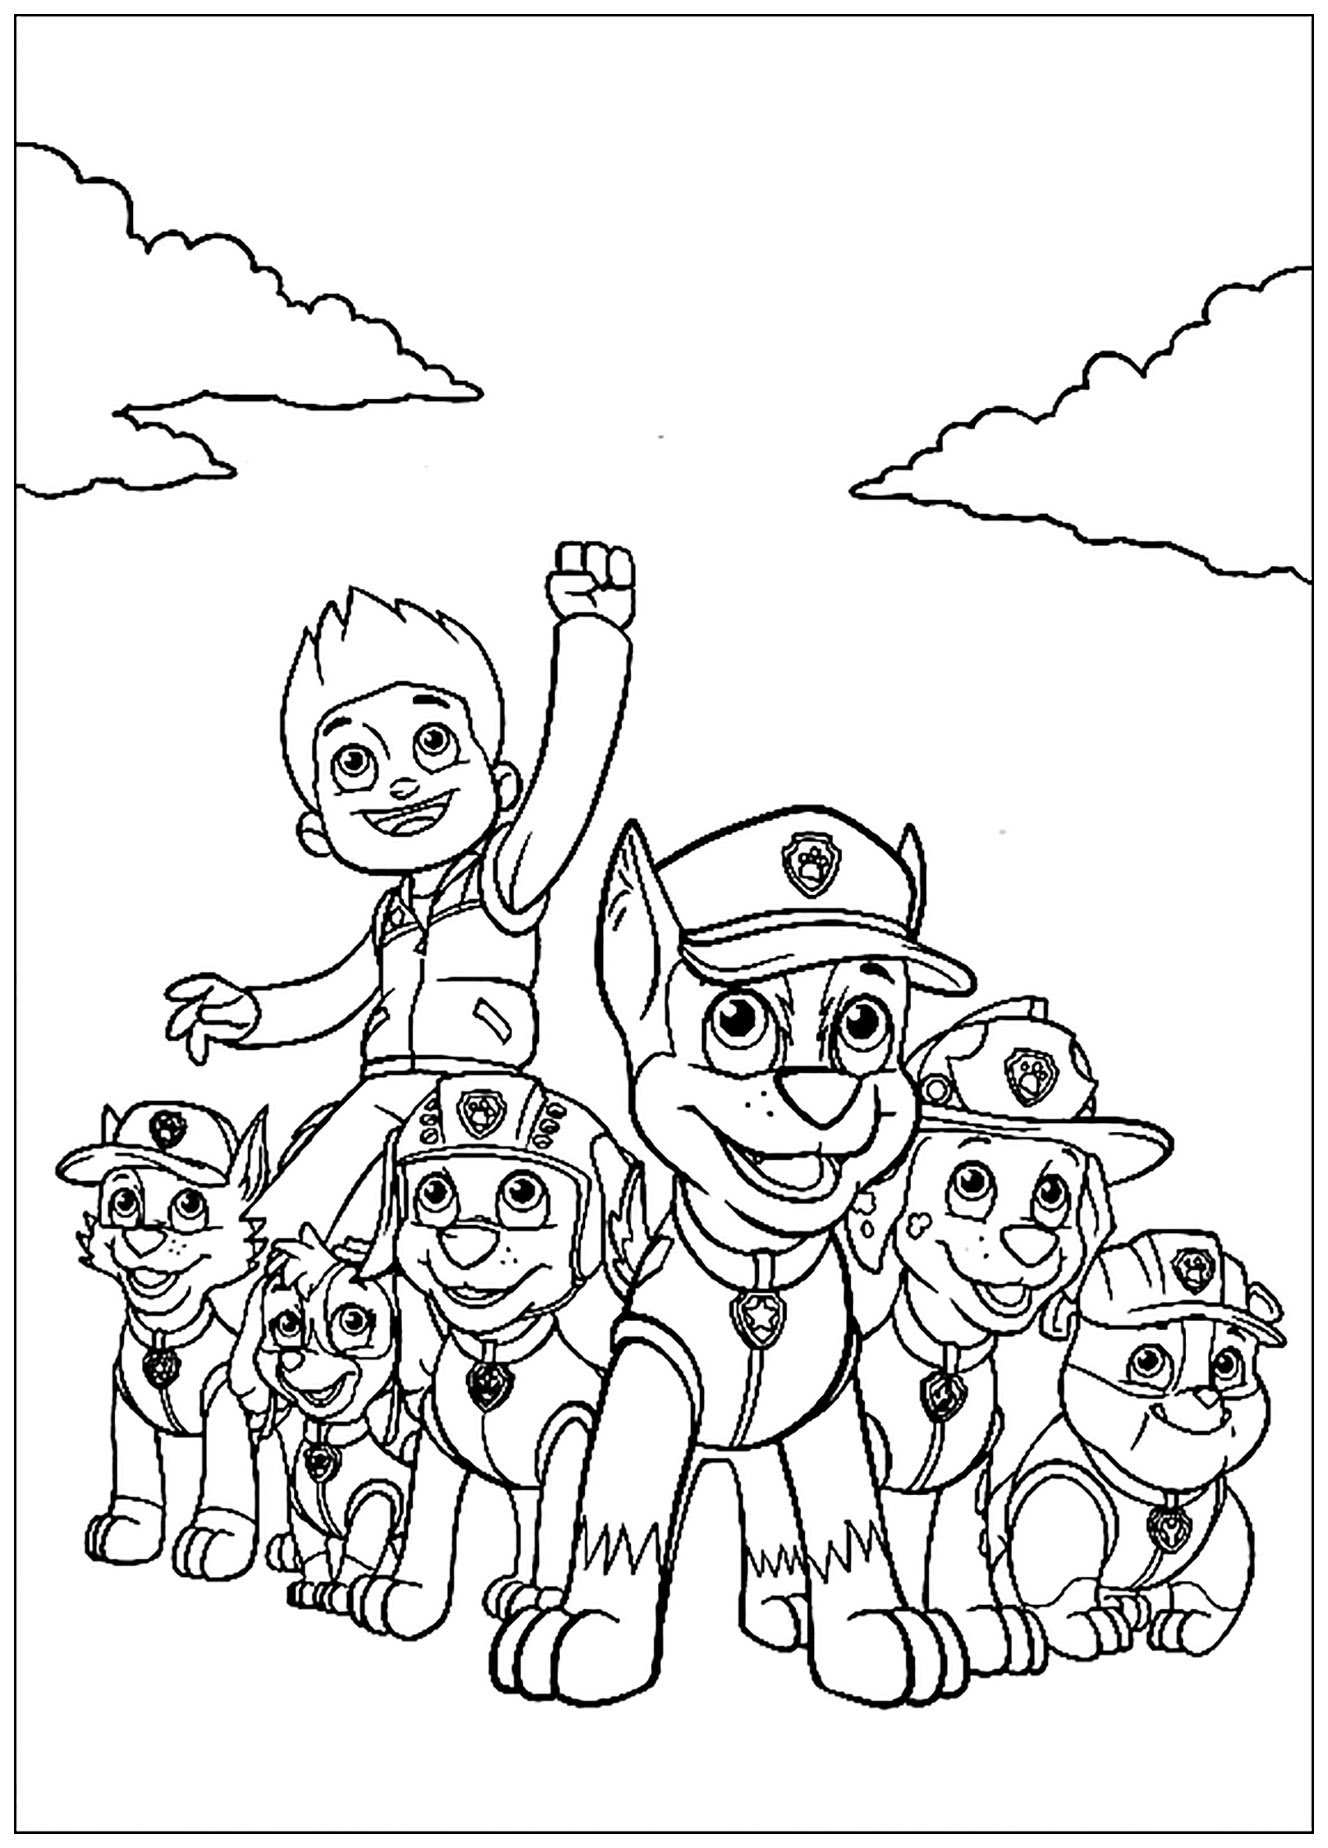 Dessin de Pat Patrouille à colorier, facile pour enfants : Mission accomplie